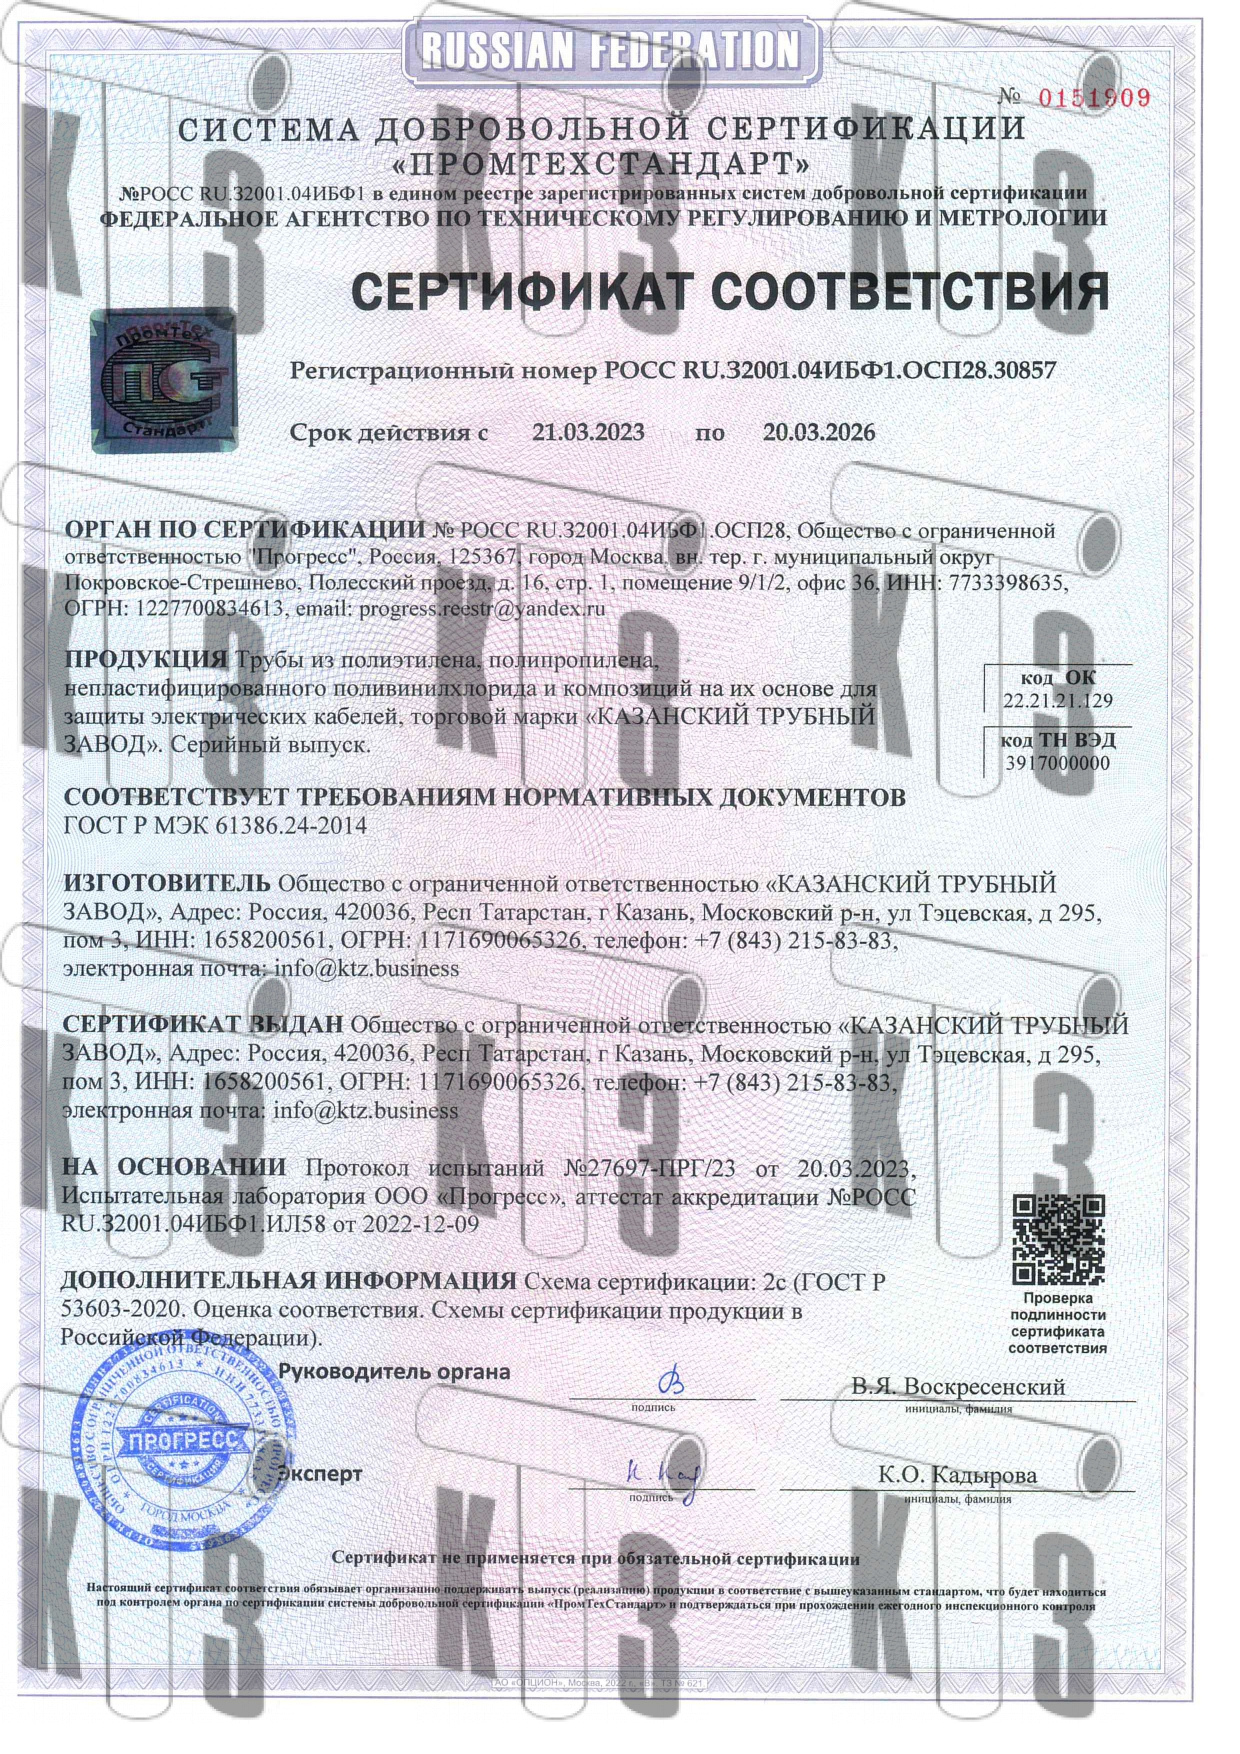 Сертификат соответствия 0151909